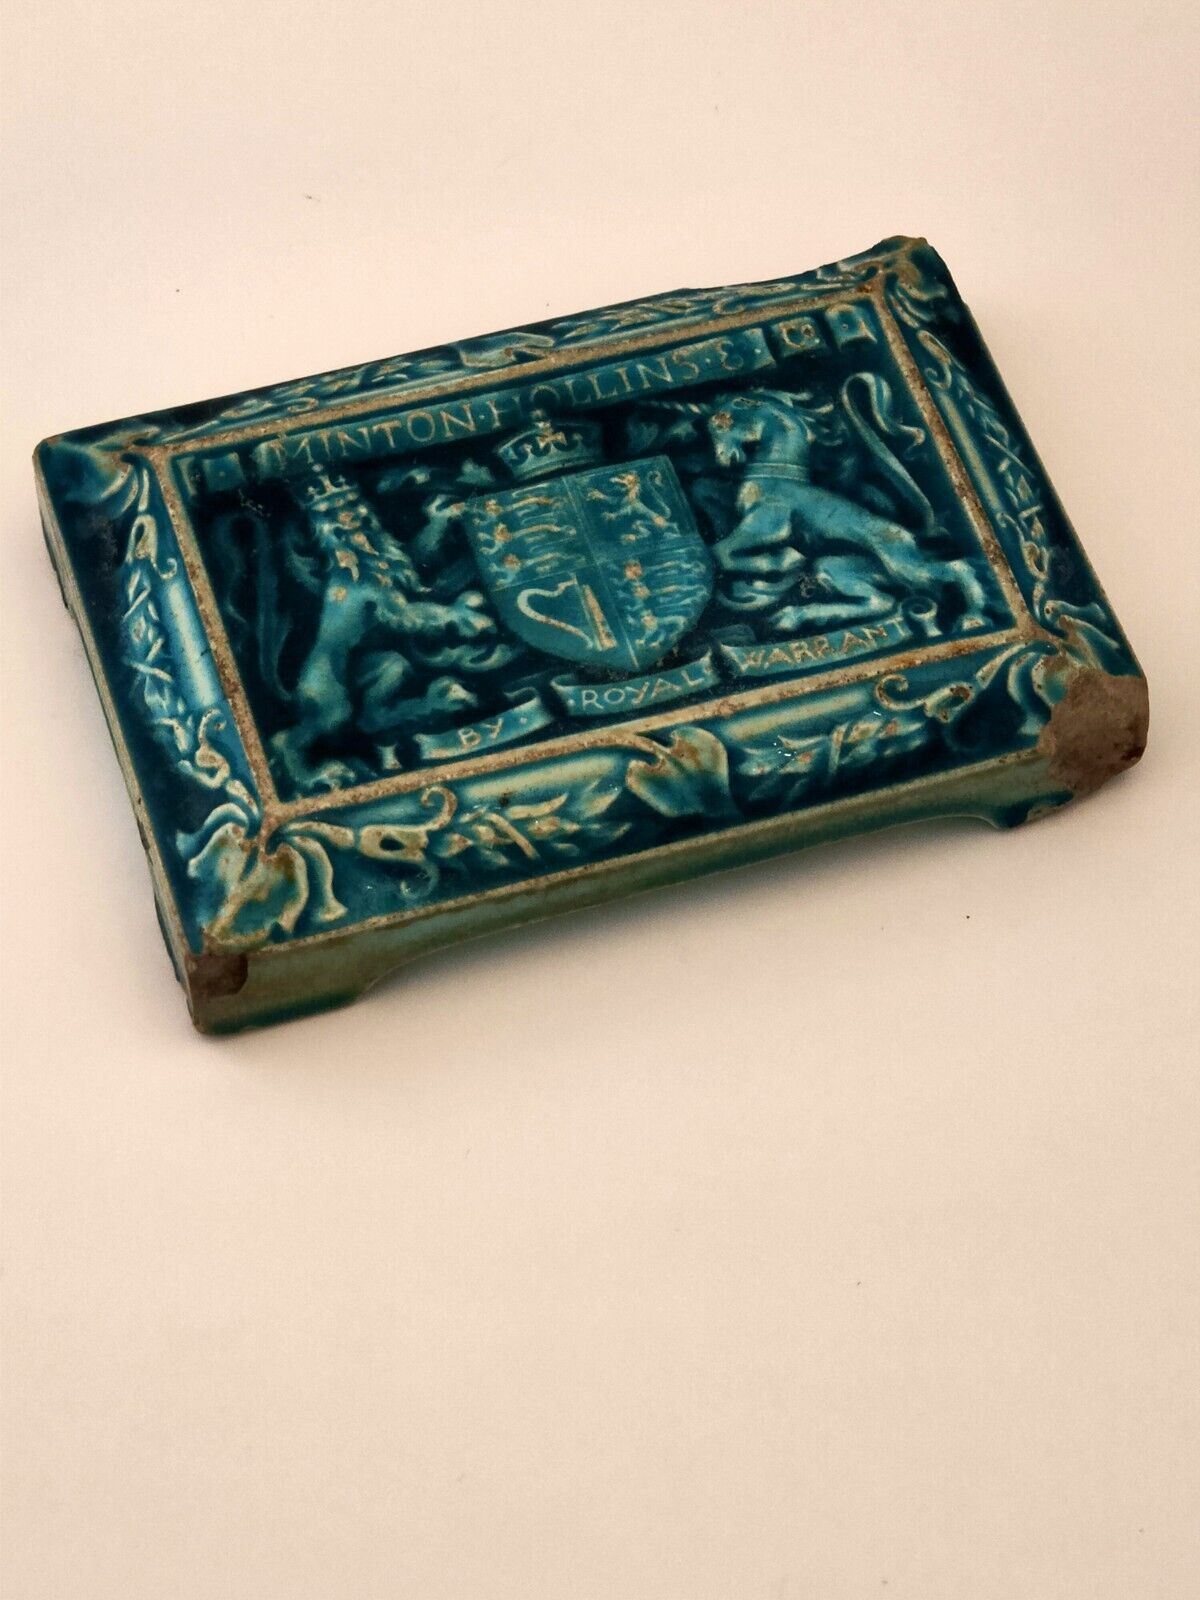 Vintage Minton Hollins Royal Warrant Tile/Paperweight Art Nouveau England...